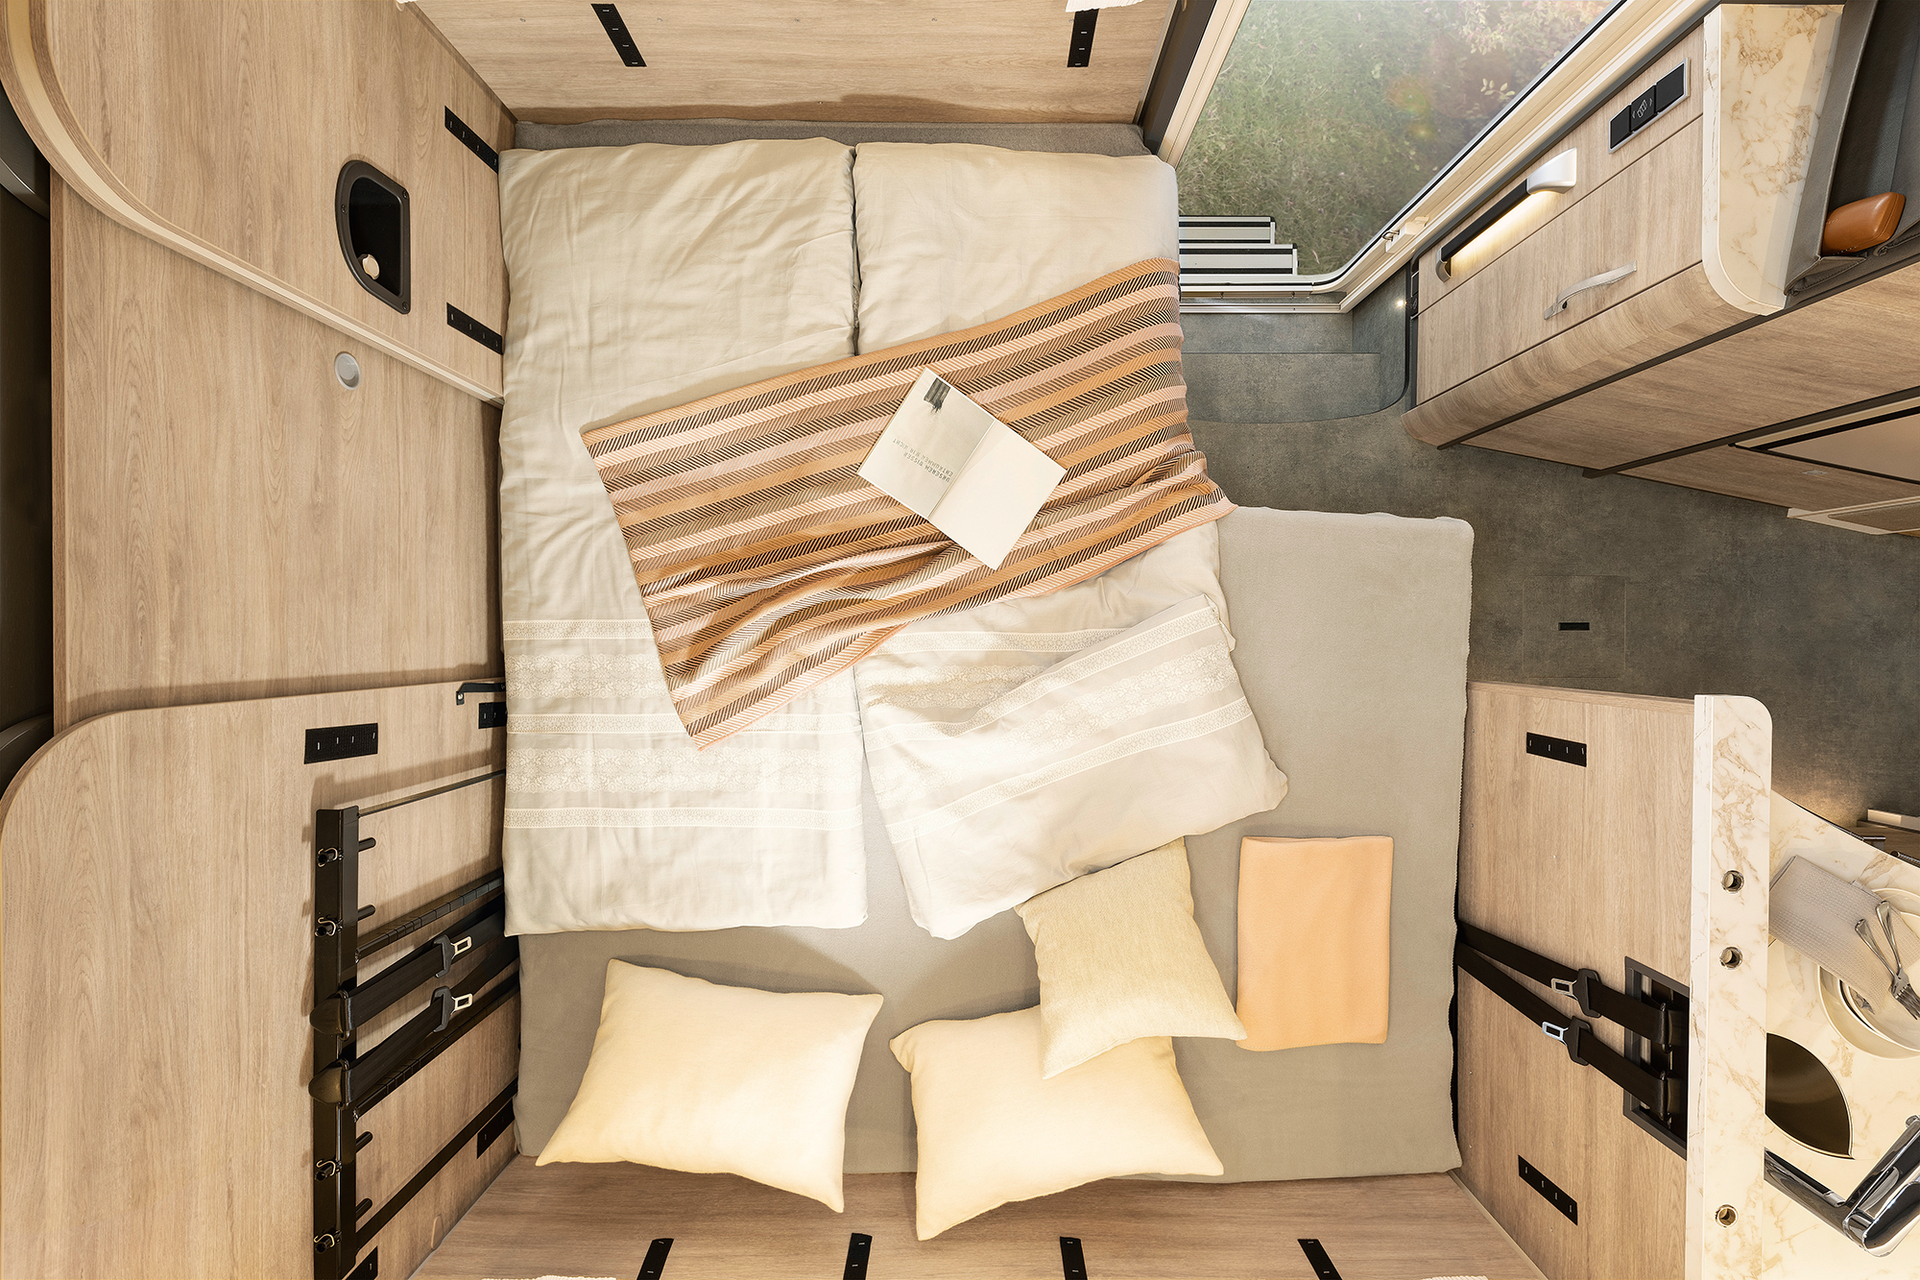 Als u nog meer slaapruimte nodig heeft, kan de zitgroep snel worden omgebouwd tot een tweepersoonsbed